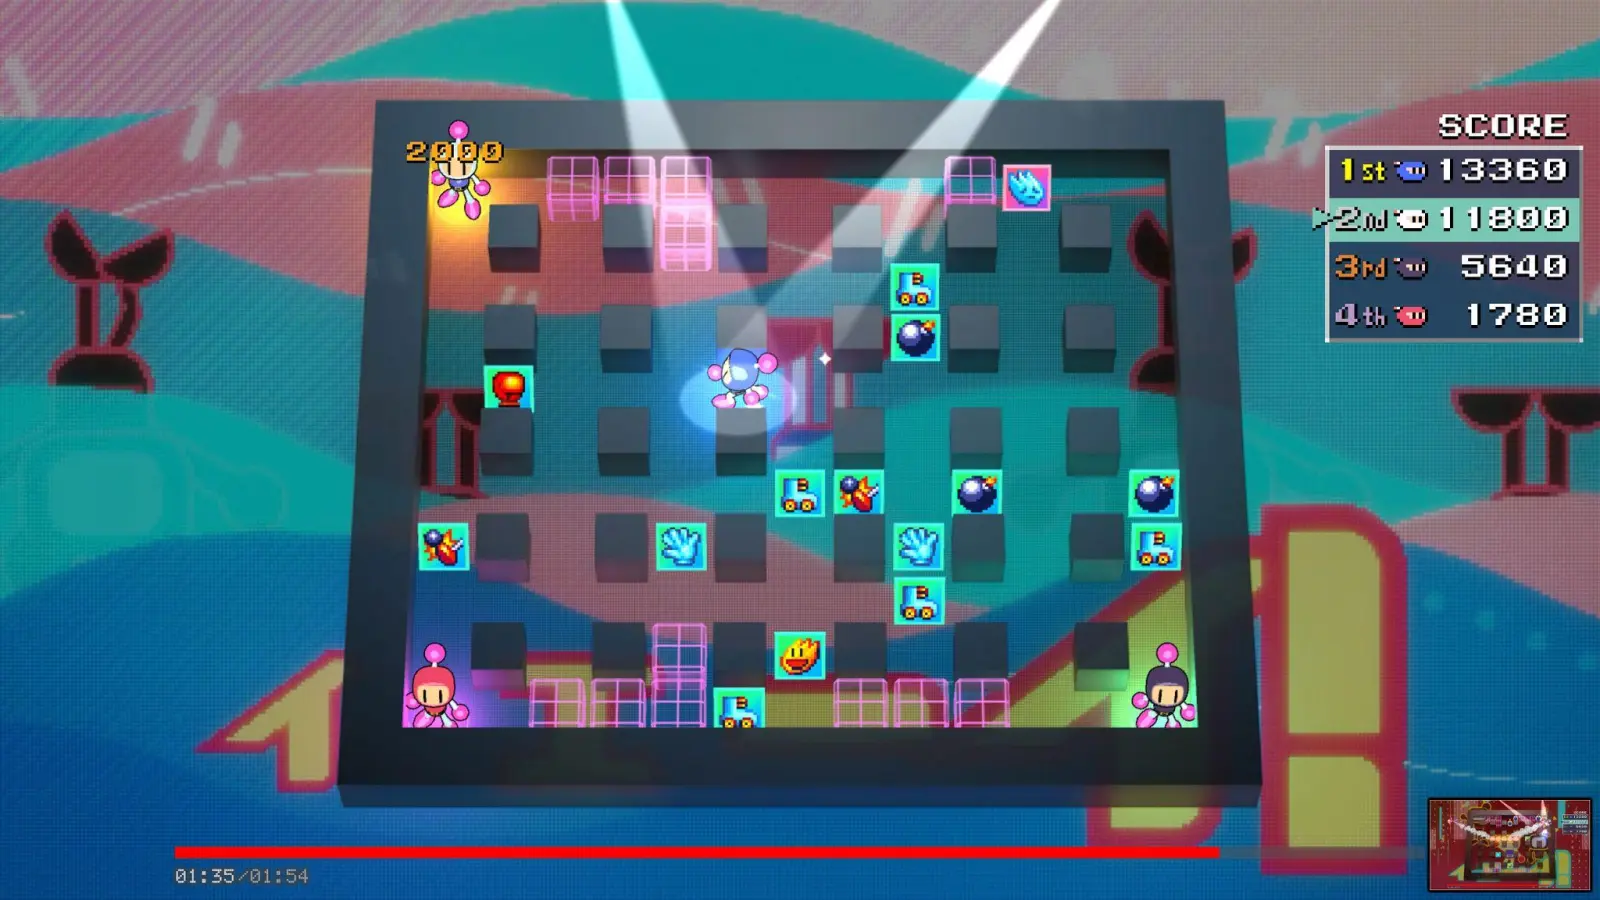 Kleiner Bomber im Spotlight: So wird in „Amazing Bomberman“ klar, welcher Spieler gerade vorne liegt. (Foto: Konami/Apple Inc./dpa-tmn)